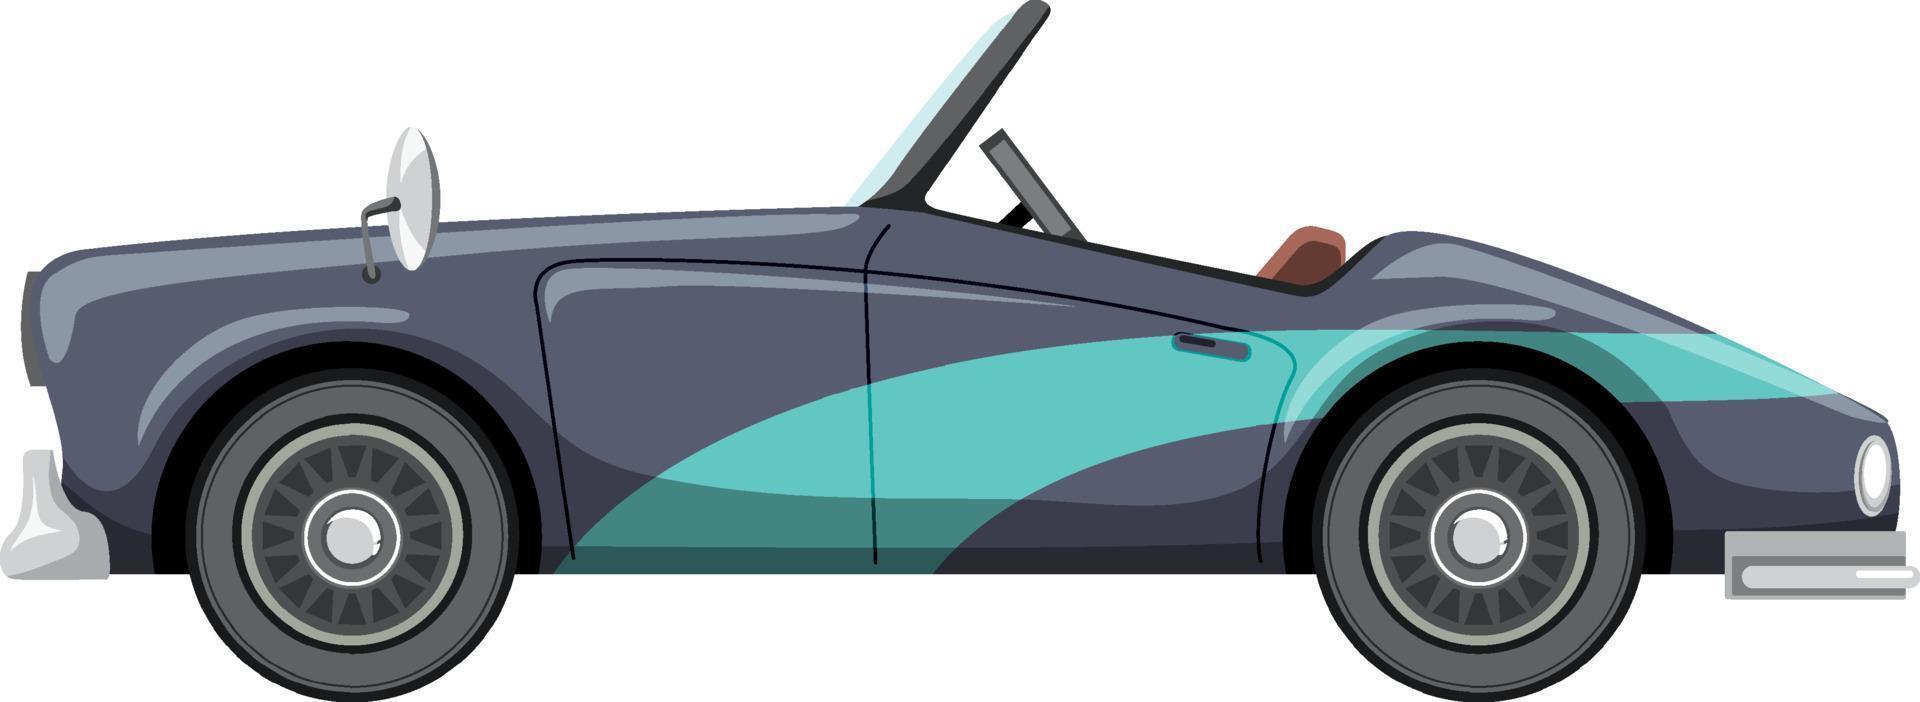 klassieke muscle car in cartoonstijl vector